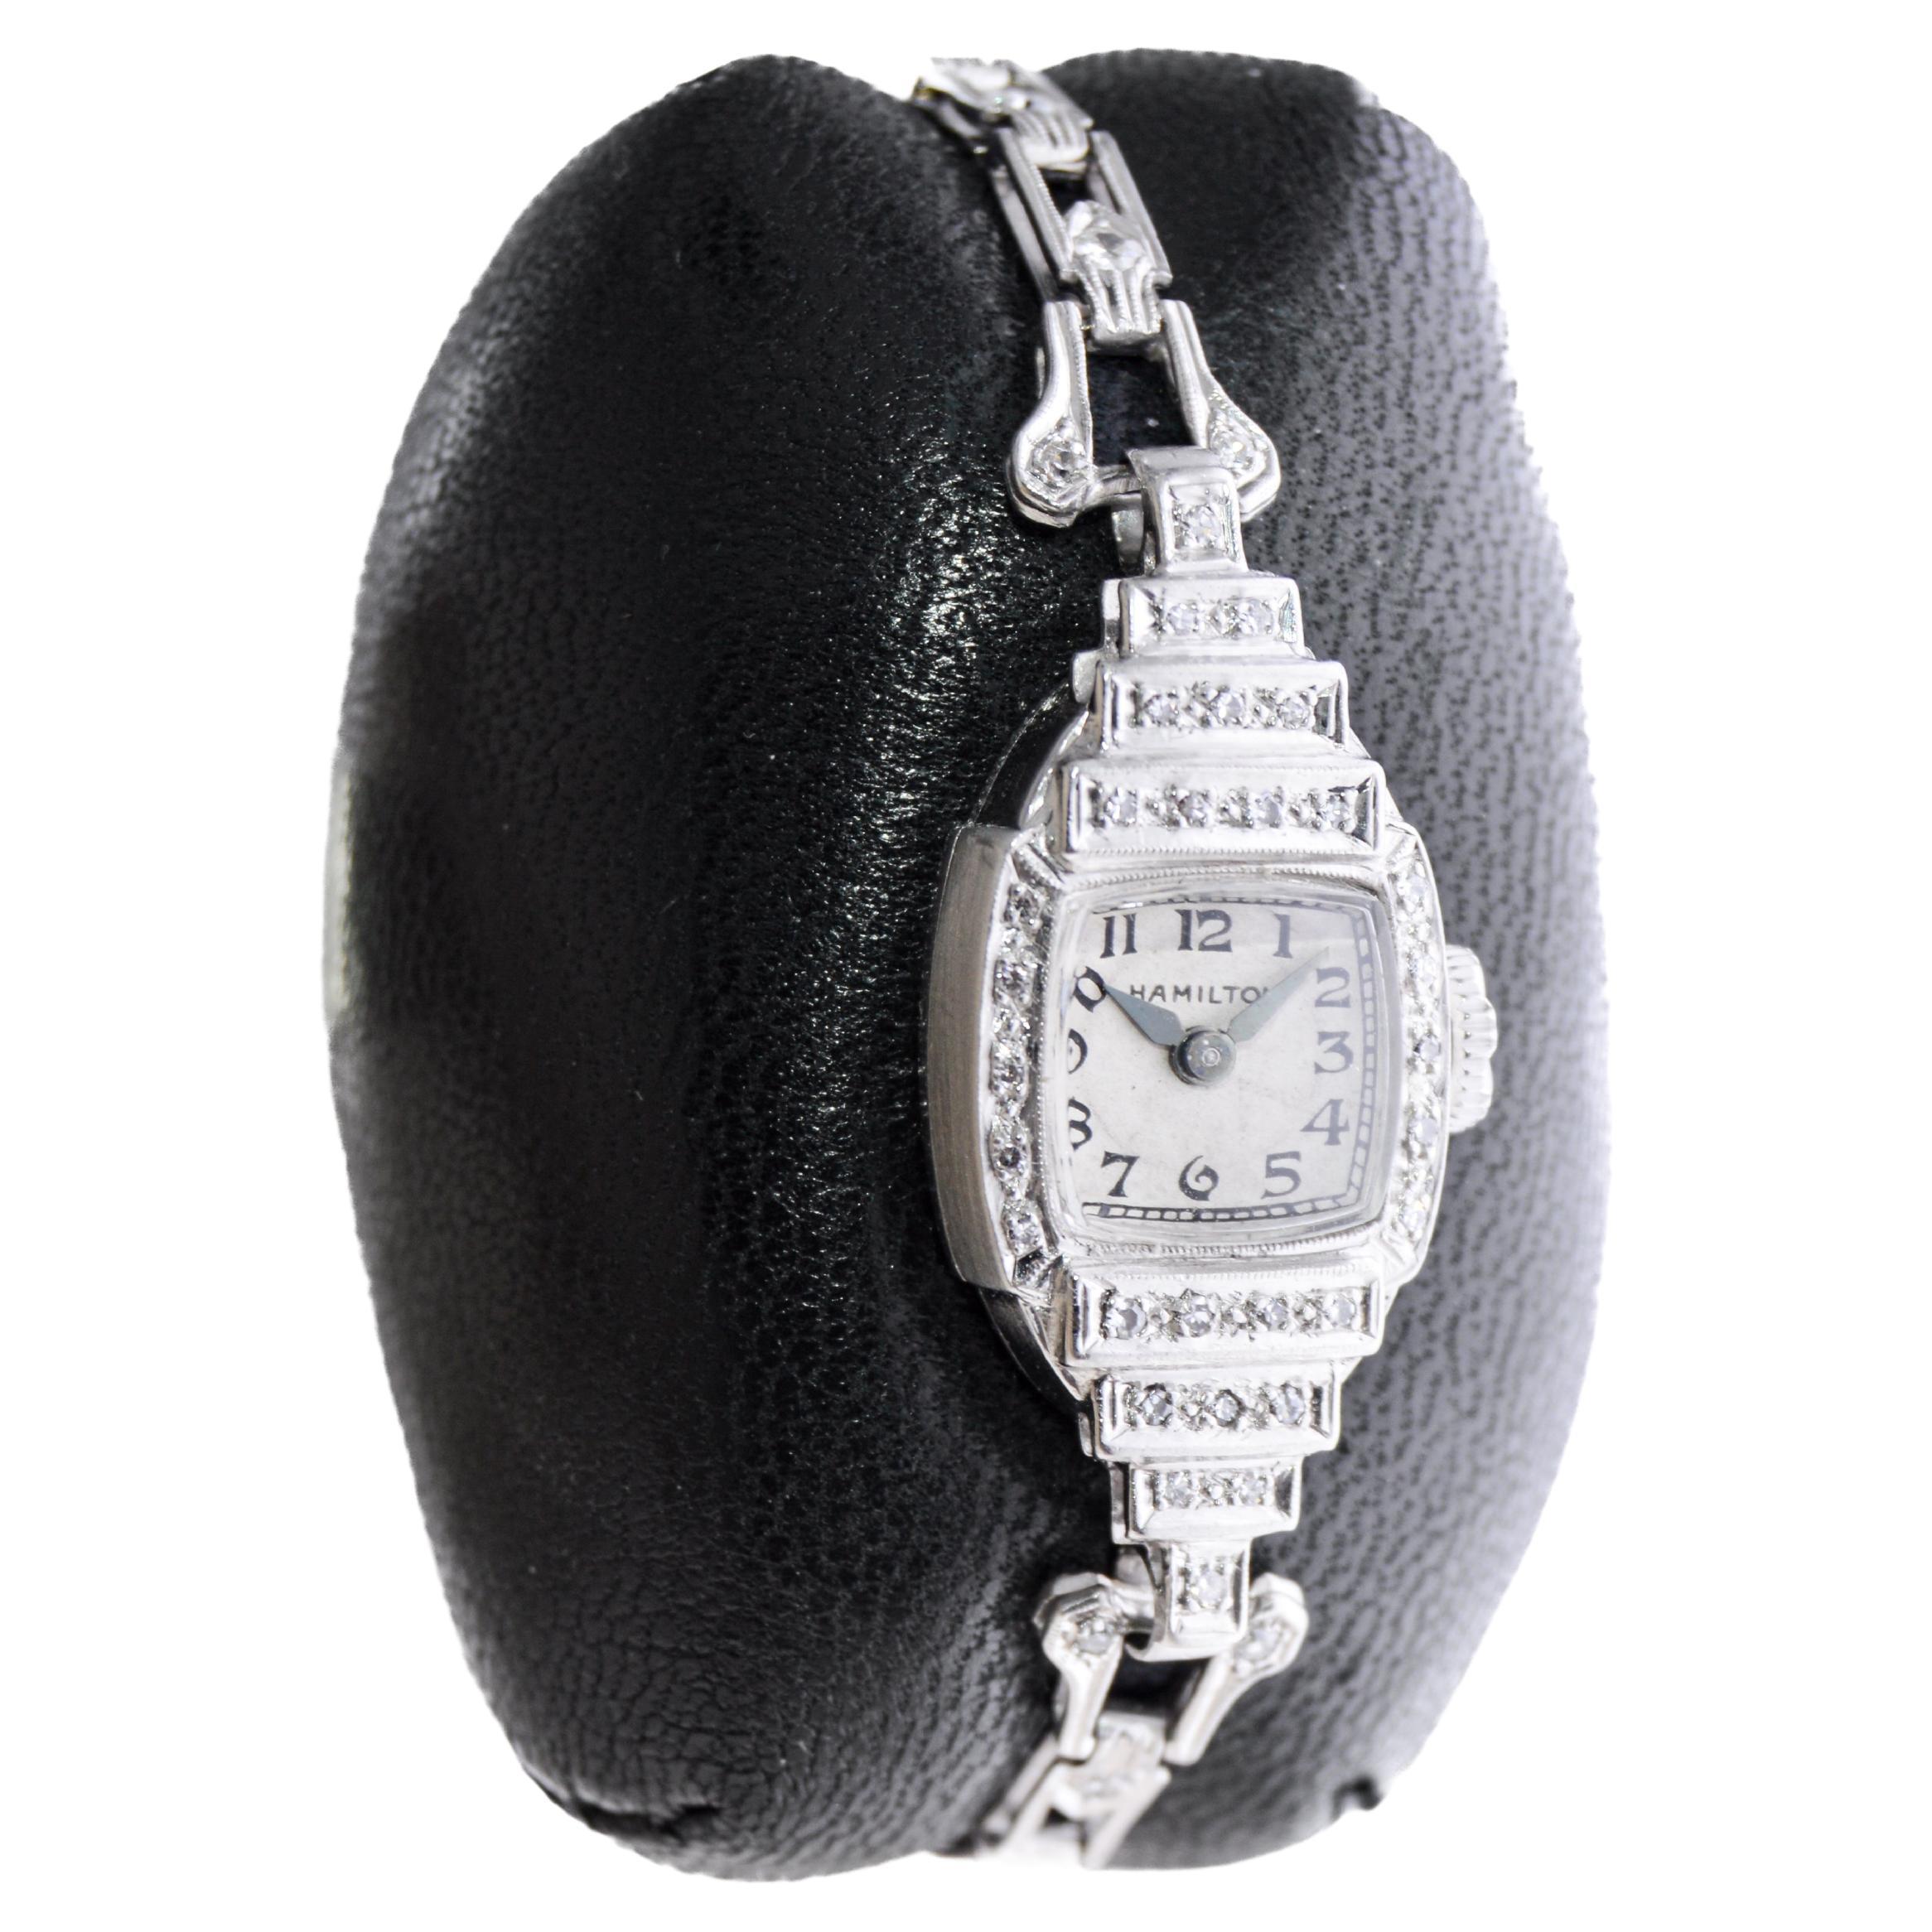 FABRIK / HAUS: Hamilton Watch Company
STIL / REFERENZ: Art Deco / Armbanduhr
METALL / MATERIAL: Platin
CIRCA / JAHR: 1940er Jahre
ABMESSUNGEN / GRÖSSE: Länge 32mm X Breite 14mm
UHRWERK / KALIBER: Handaufzug / 17 Jewels 
ZIFFERBLATT / ZEIGER: